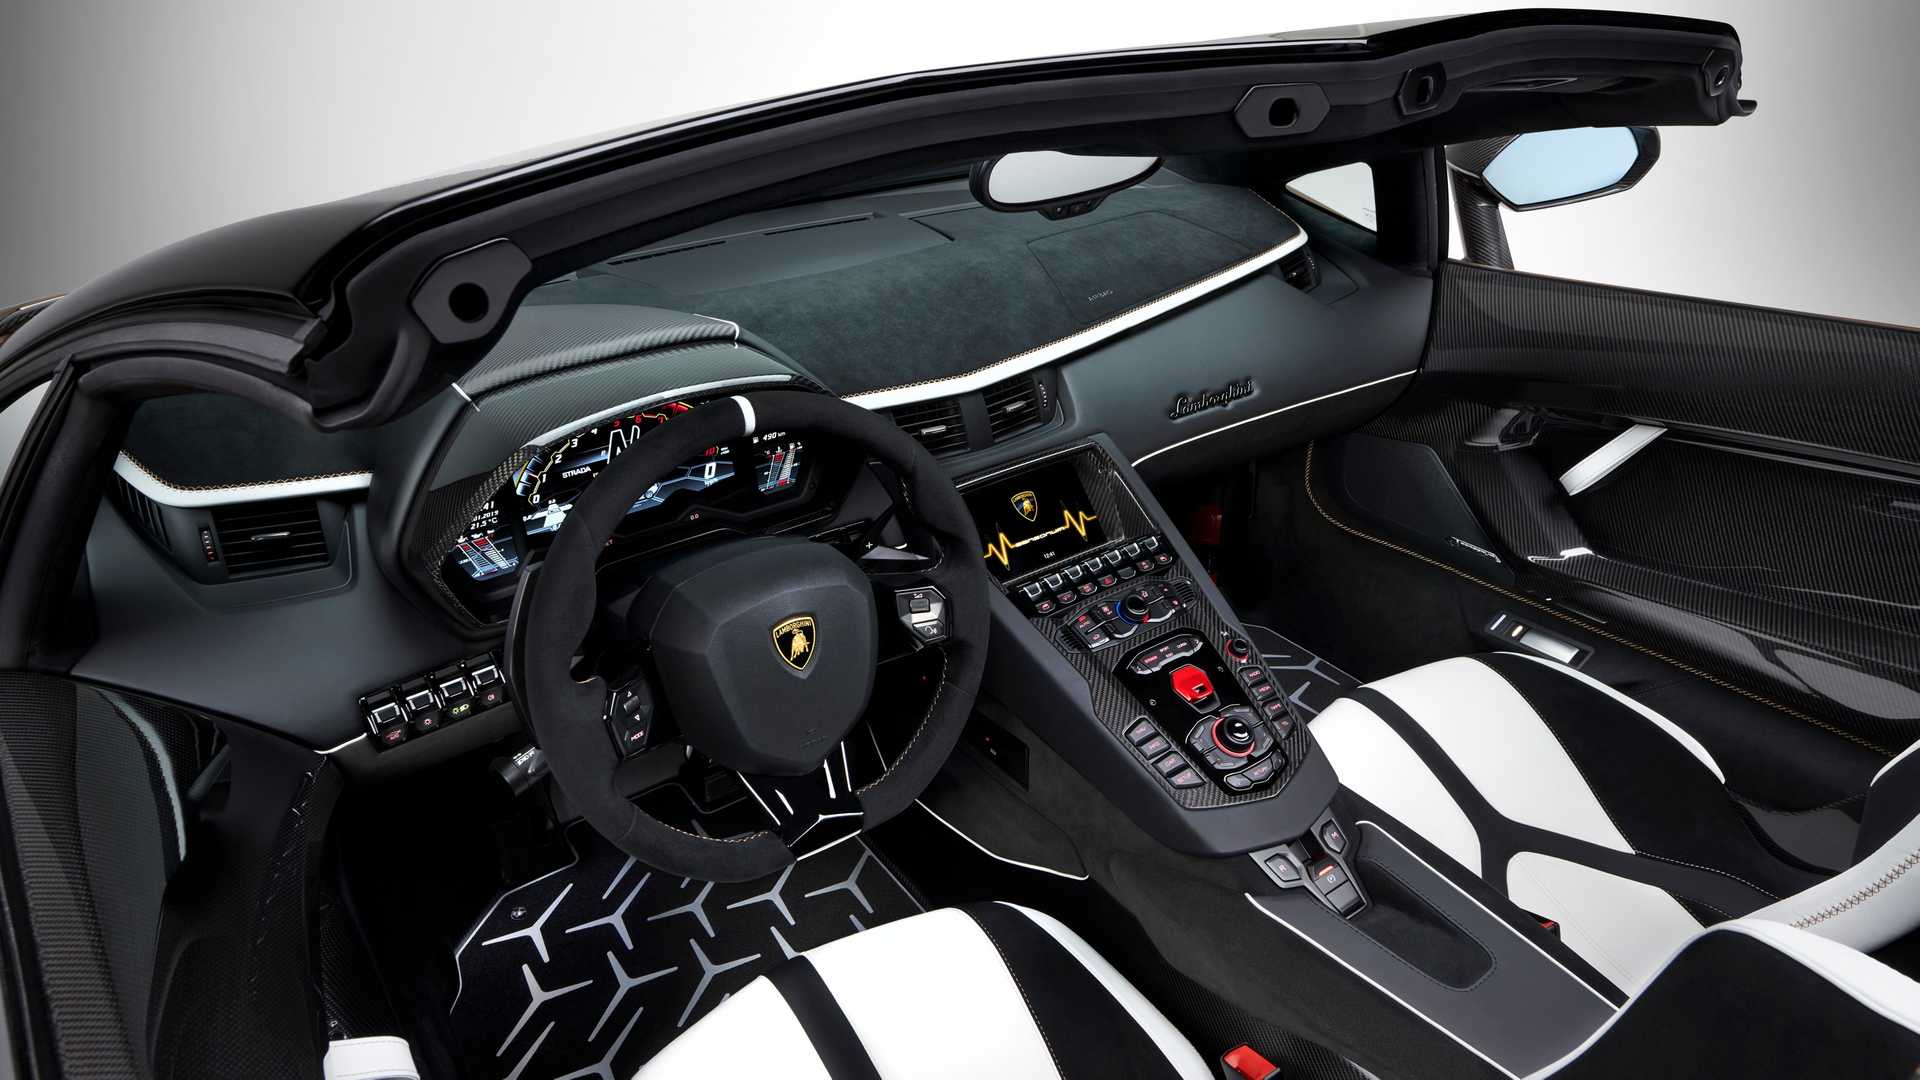 Lamborghini Aventador SVJ Roadster Picture Gallery and Quick